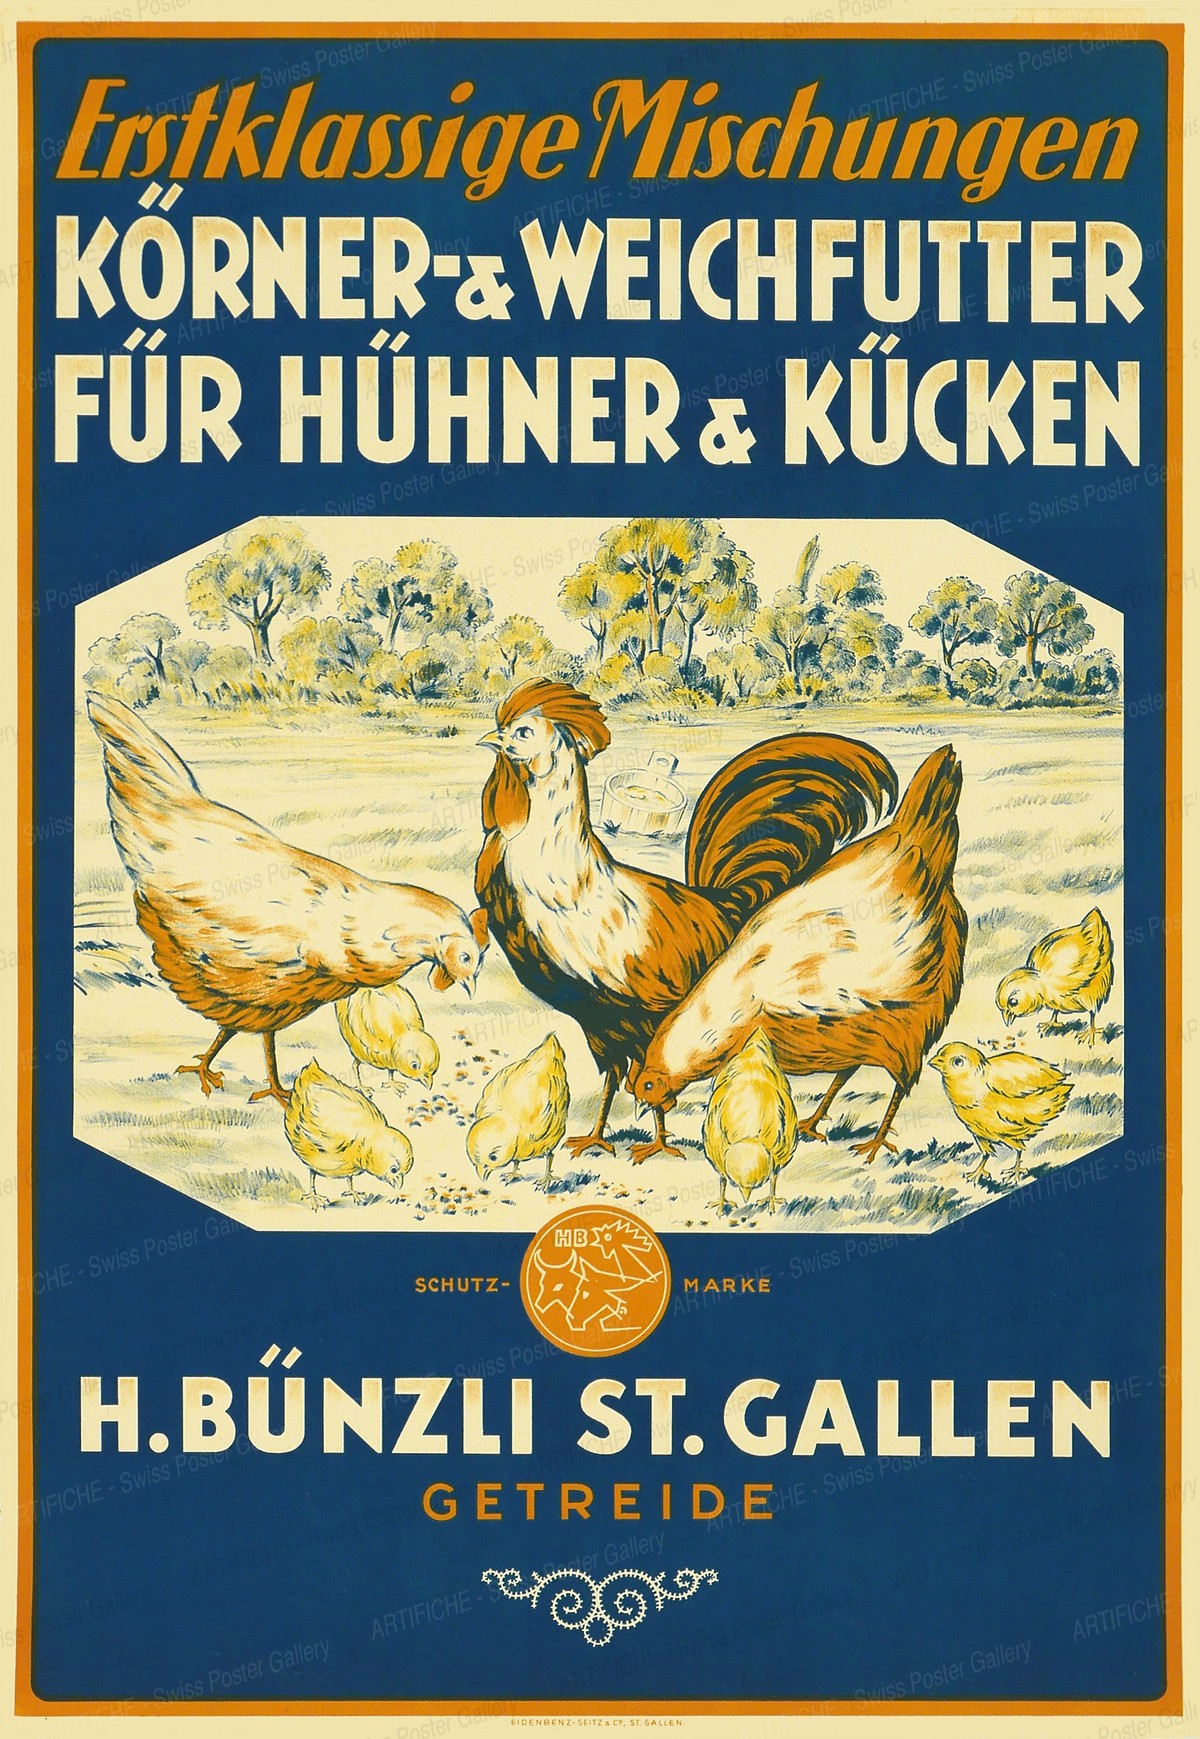 H. Bünzli St. Gallen Getreide – Erstklassige Mischungen – Körner- & Weichfutter für Hühner & Kücken, Artist unknown